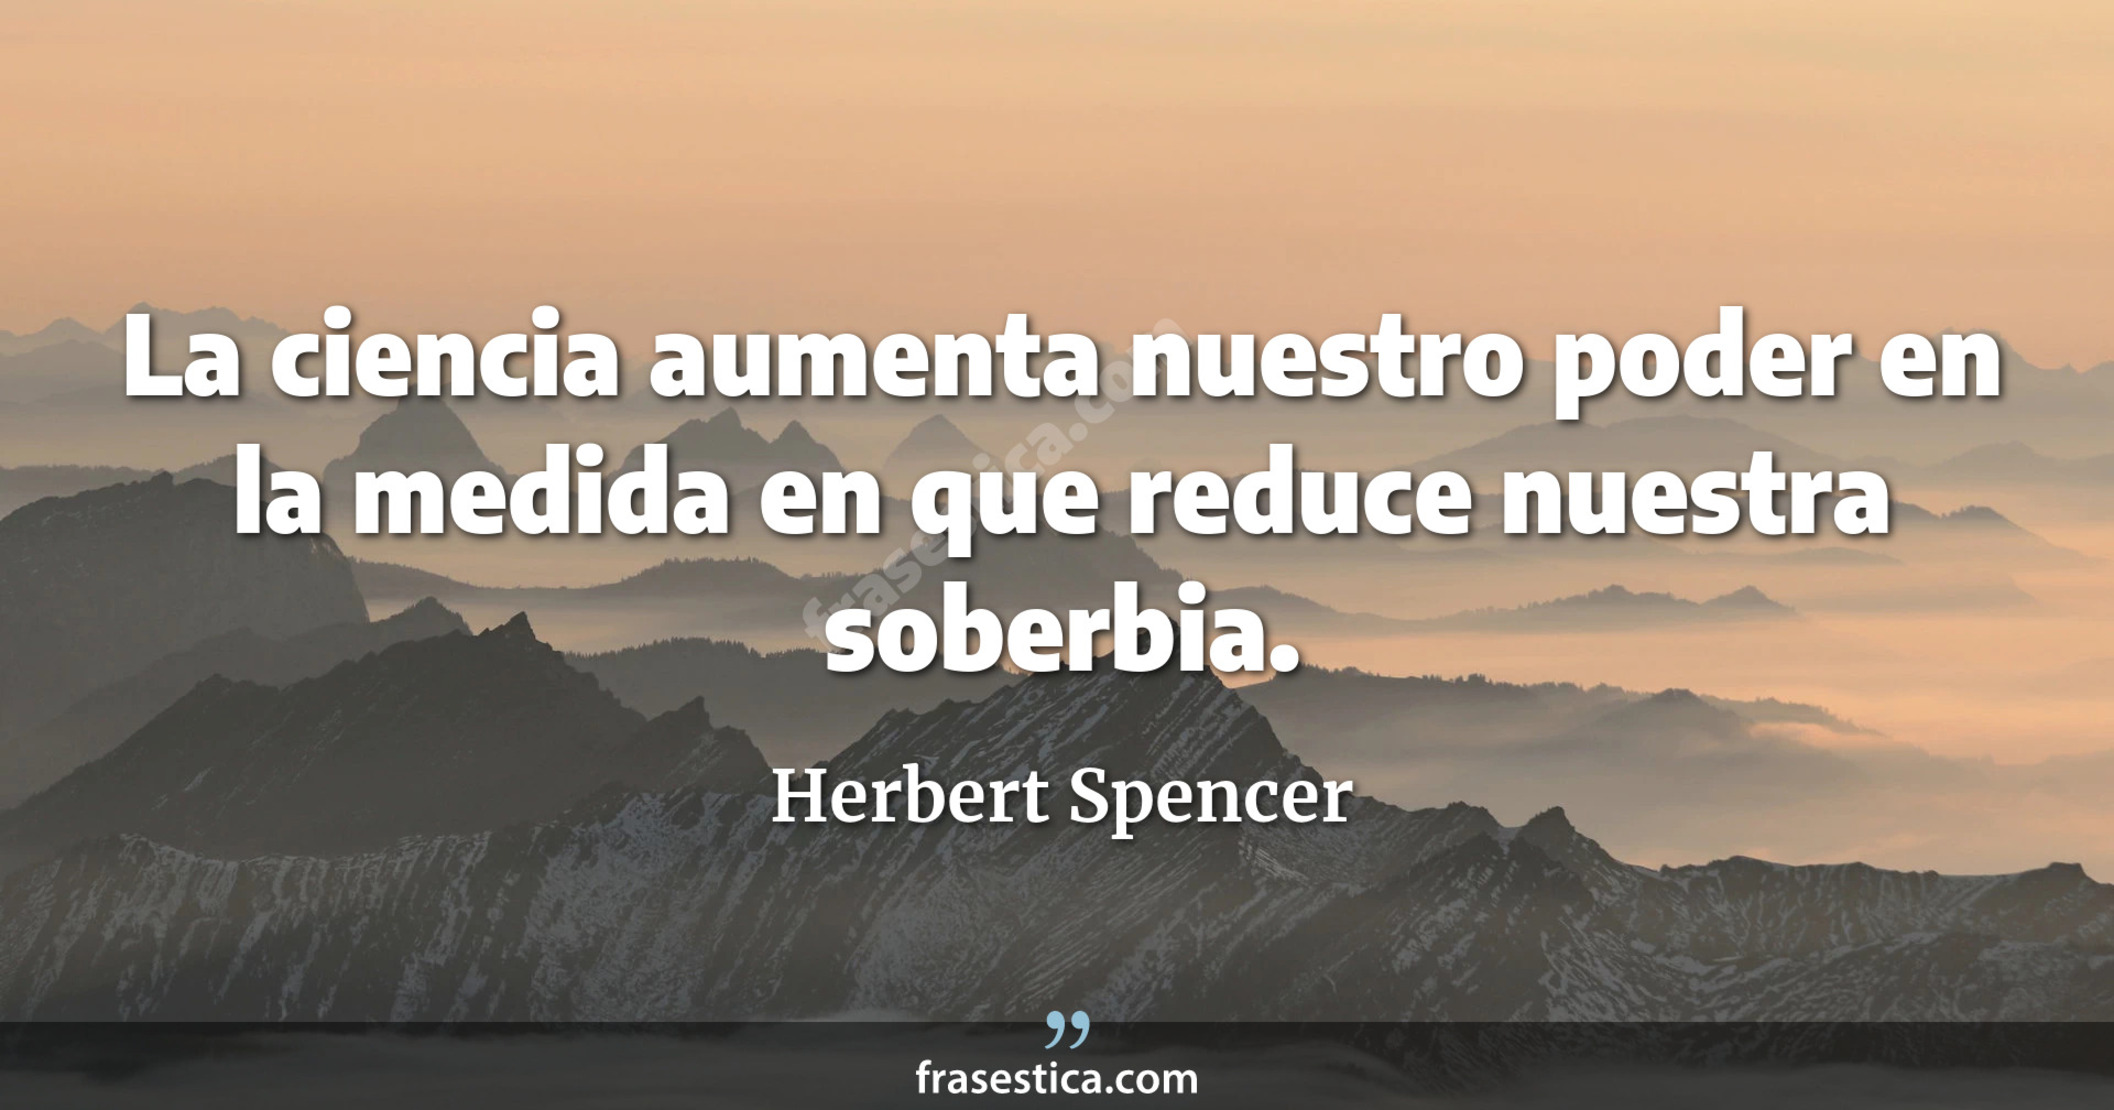 La ciencia aumenta nuestro poder en la medida en que reduce nuestra soberbia. - Herbert Spencer